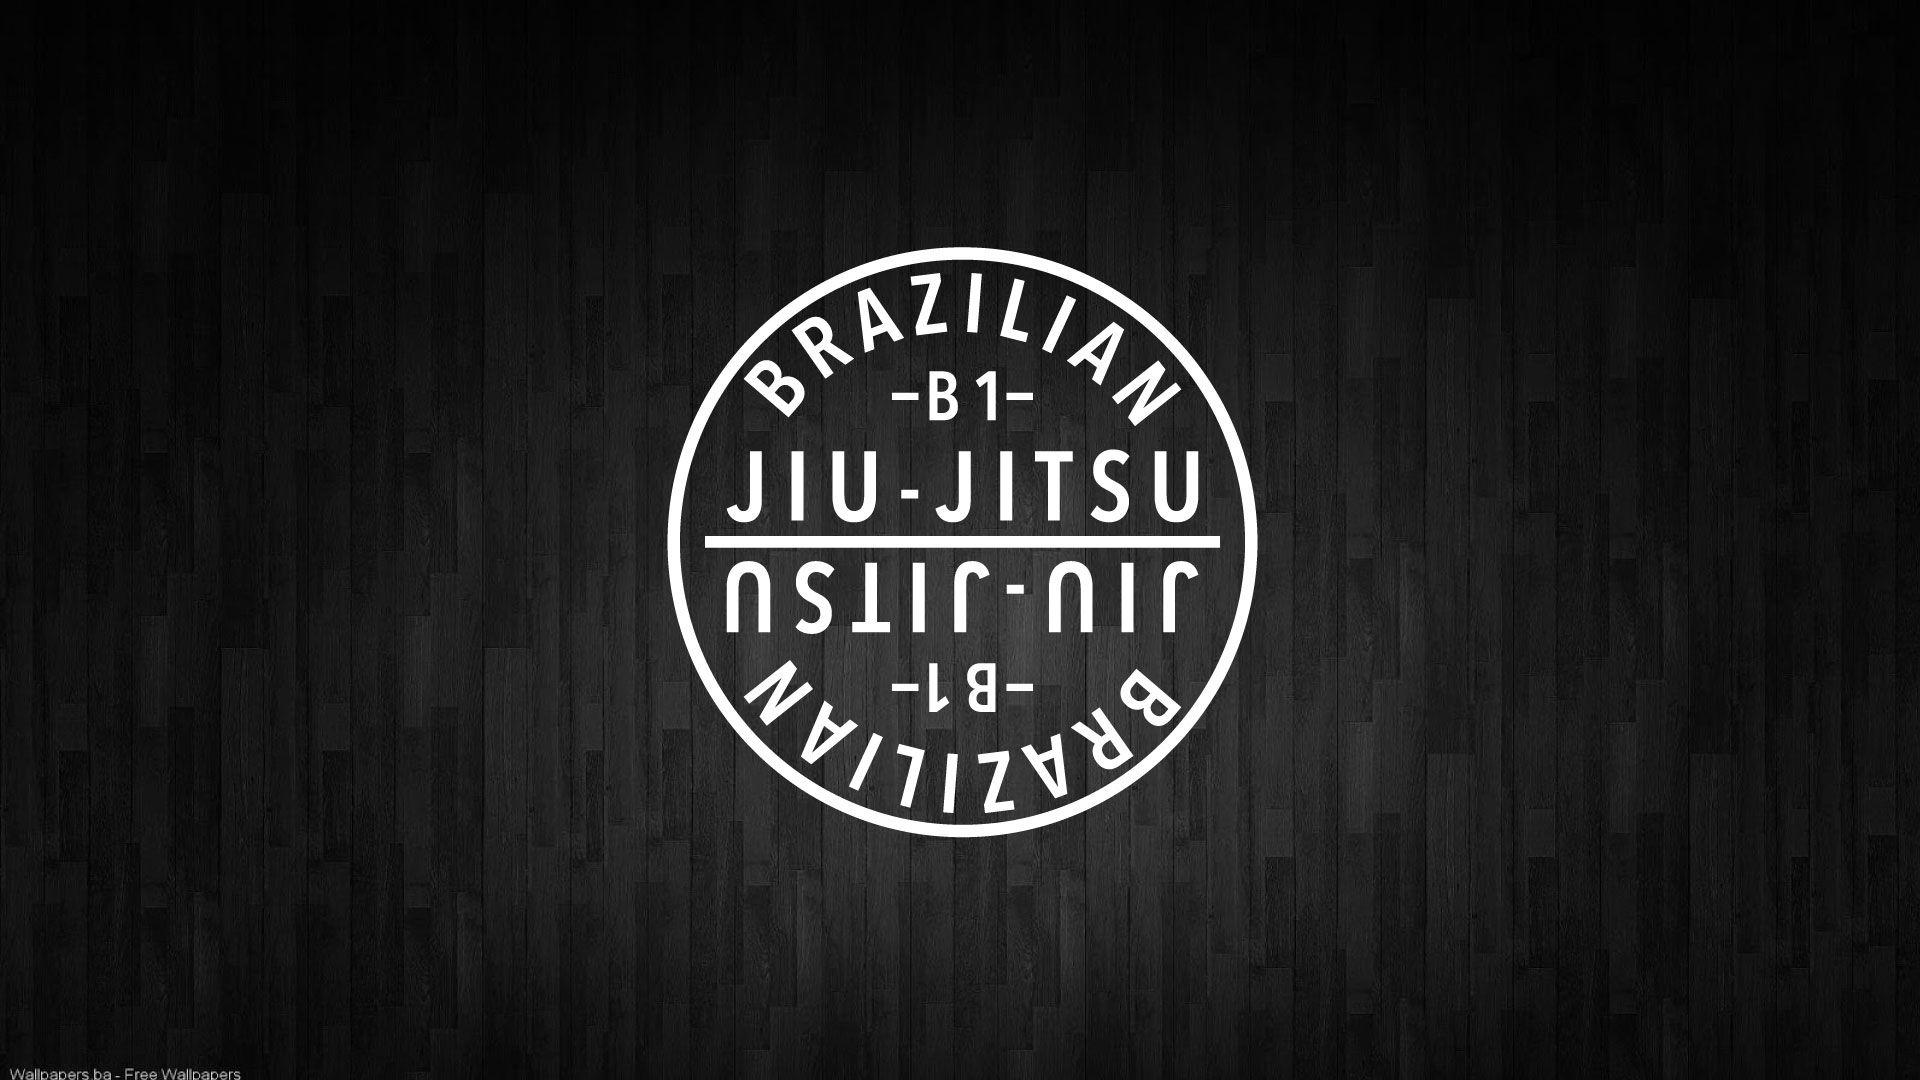 B1 Brazilian Jiu Jitsu & Self Defense, Judo